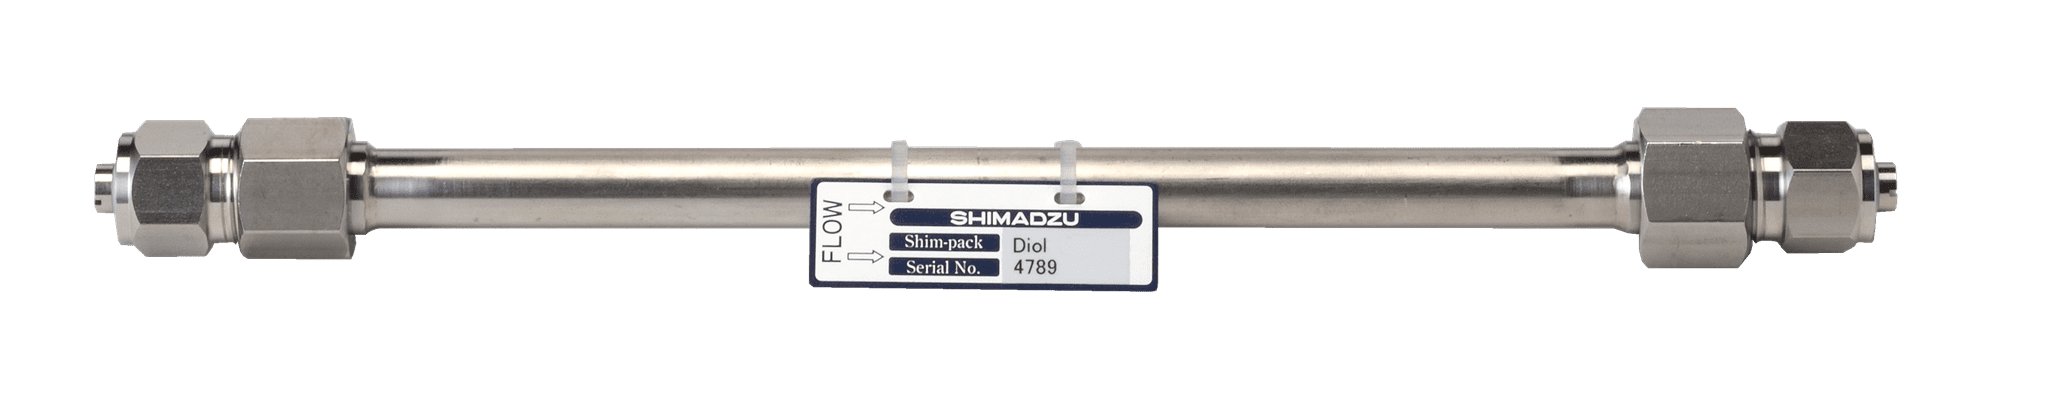 Image de Shim-pack Diol-150; 5 µm; 250 x 7.9